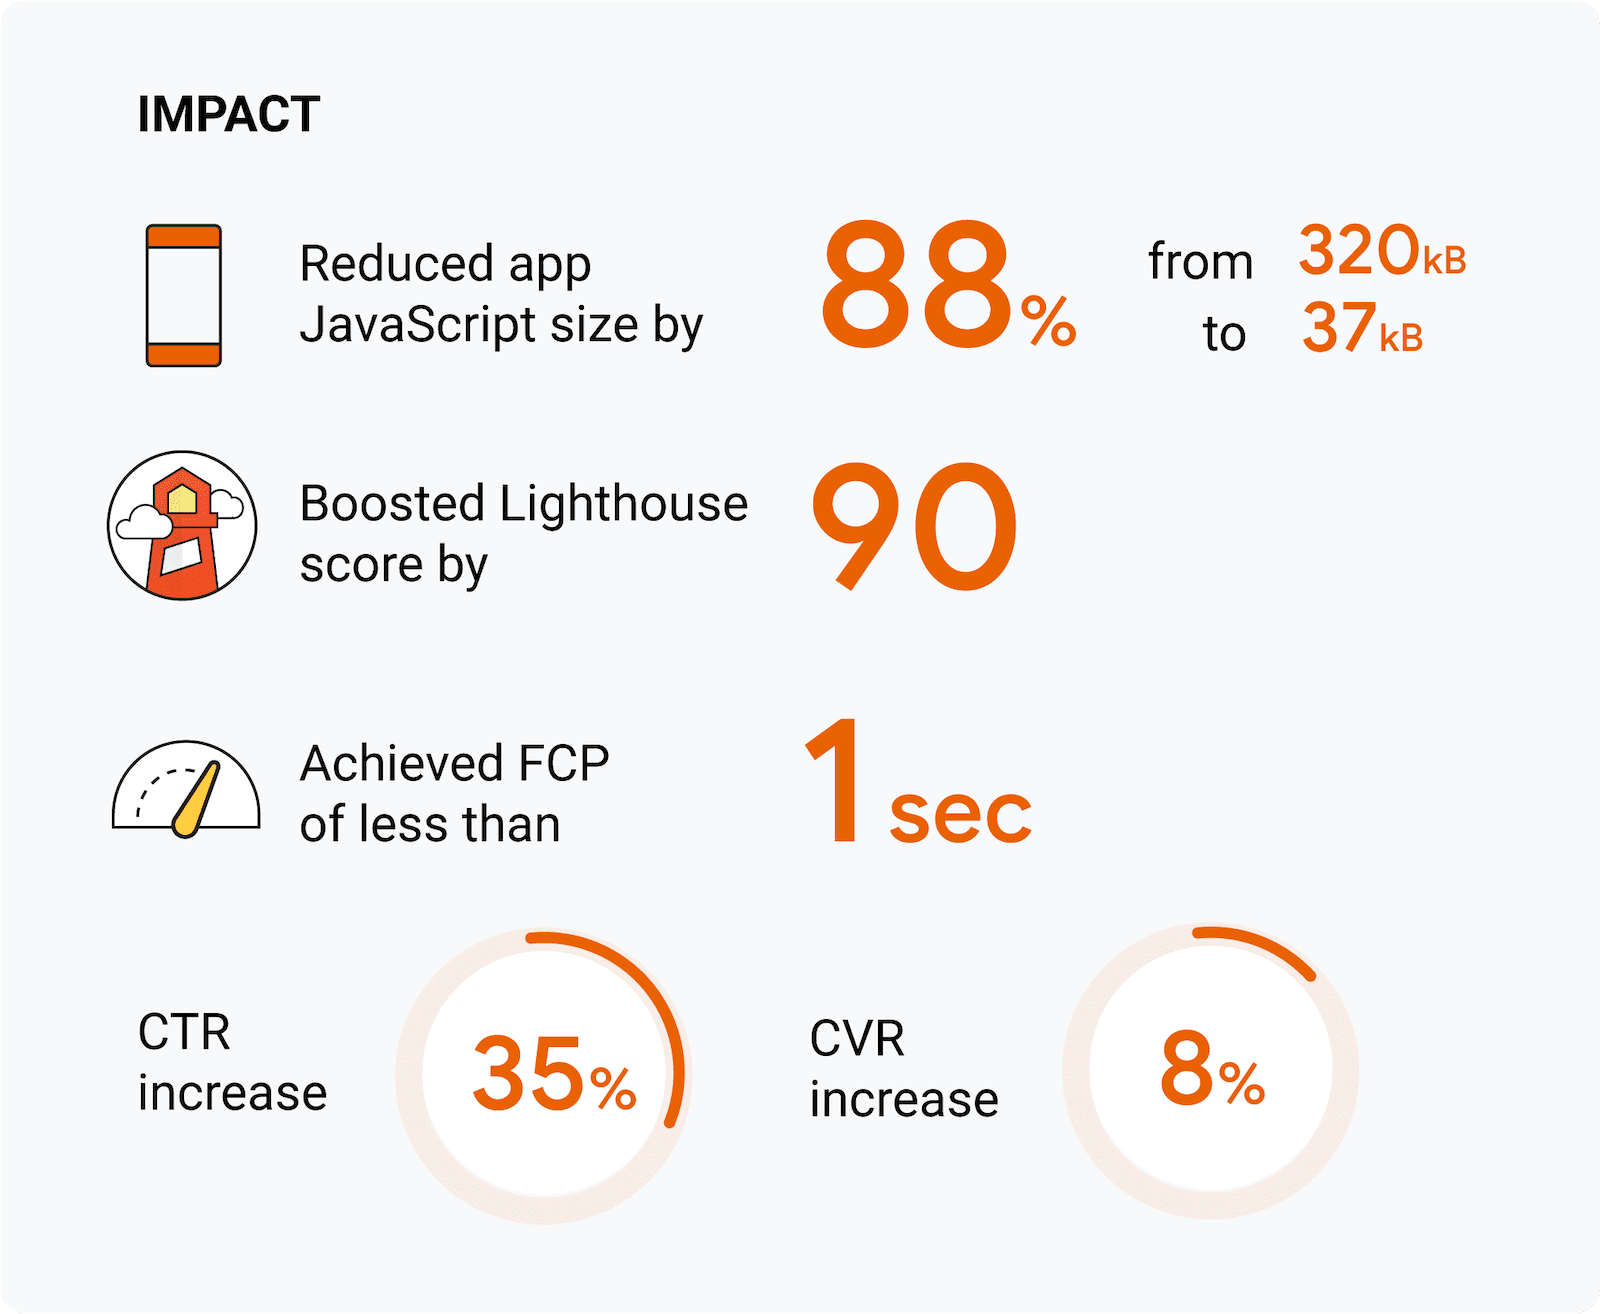 Reduzimos o tamanho do JavaScript do app em 88% (de 320 KB para 37 KB). A pontuação do Lighthouse melhorou em 90 pontos. FCP atingido de menos de 1 segundo. Aumento de 35% na CTR. Aumento de 8% na CVR.